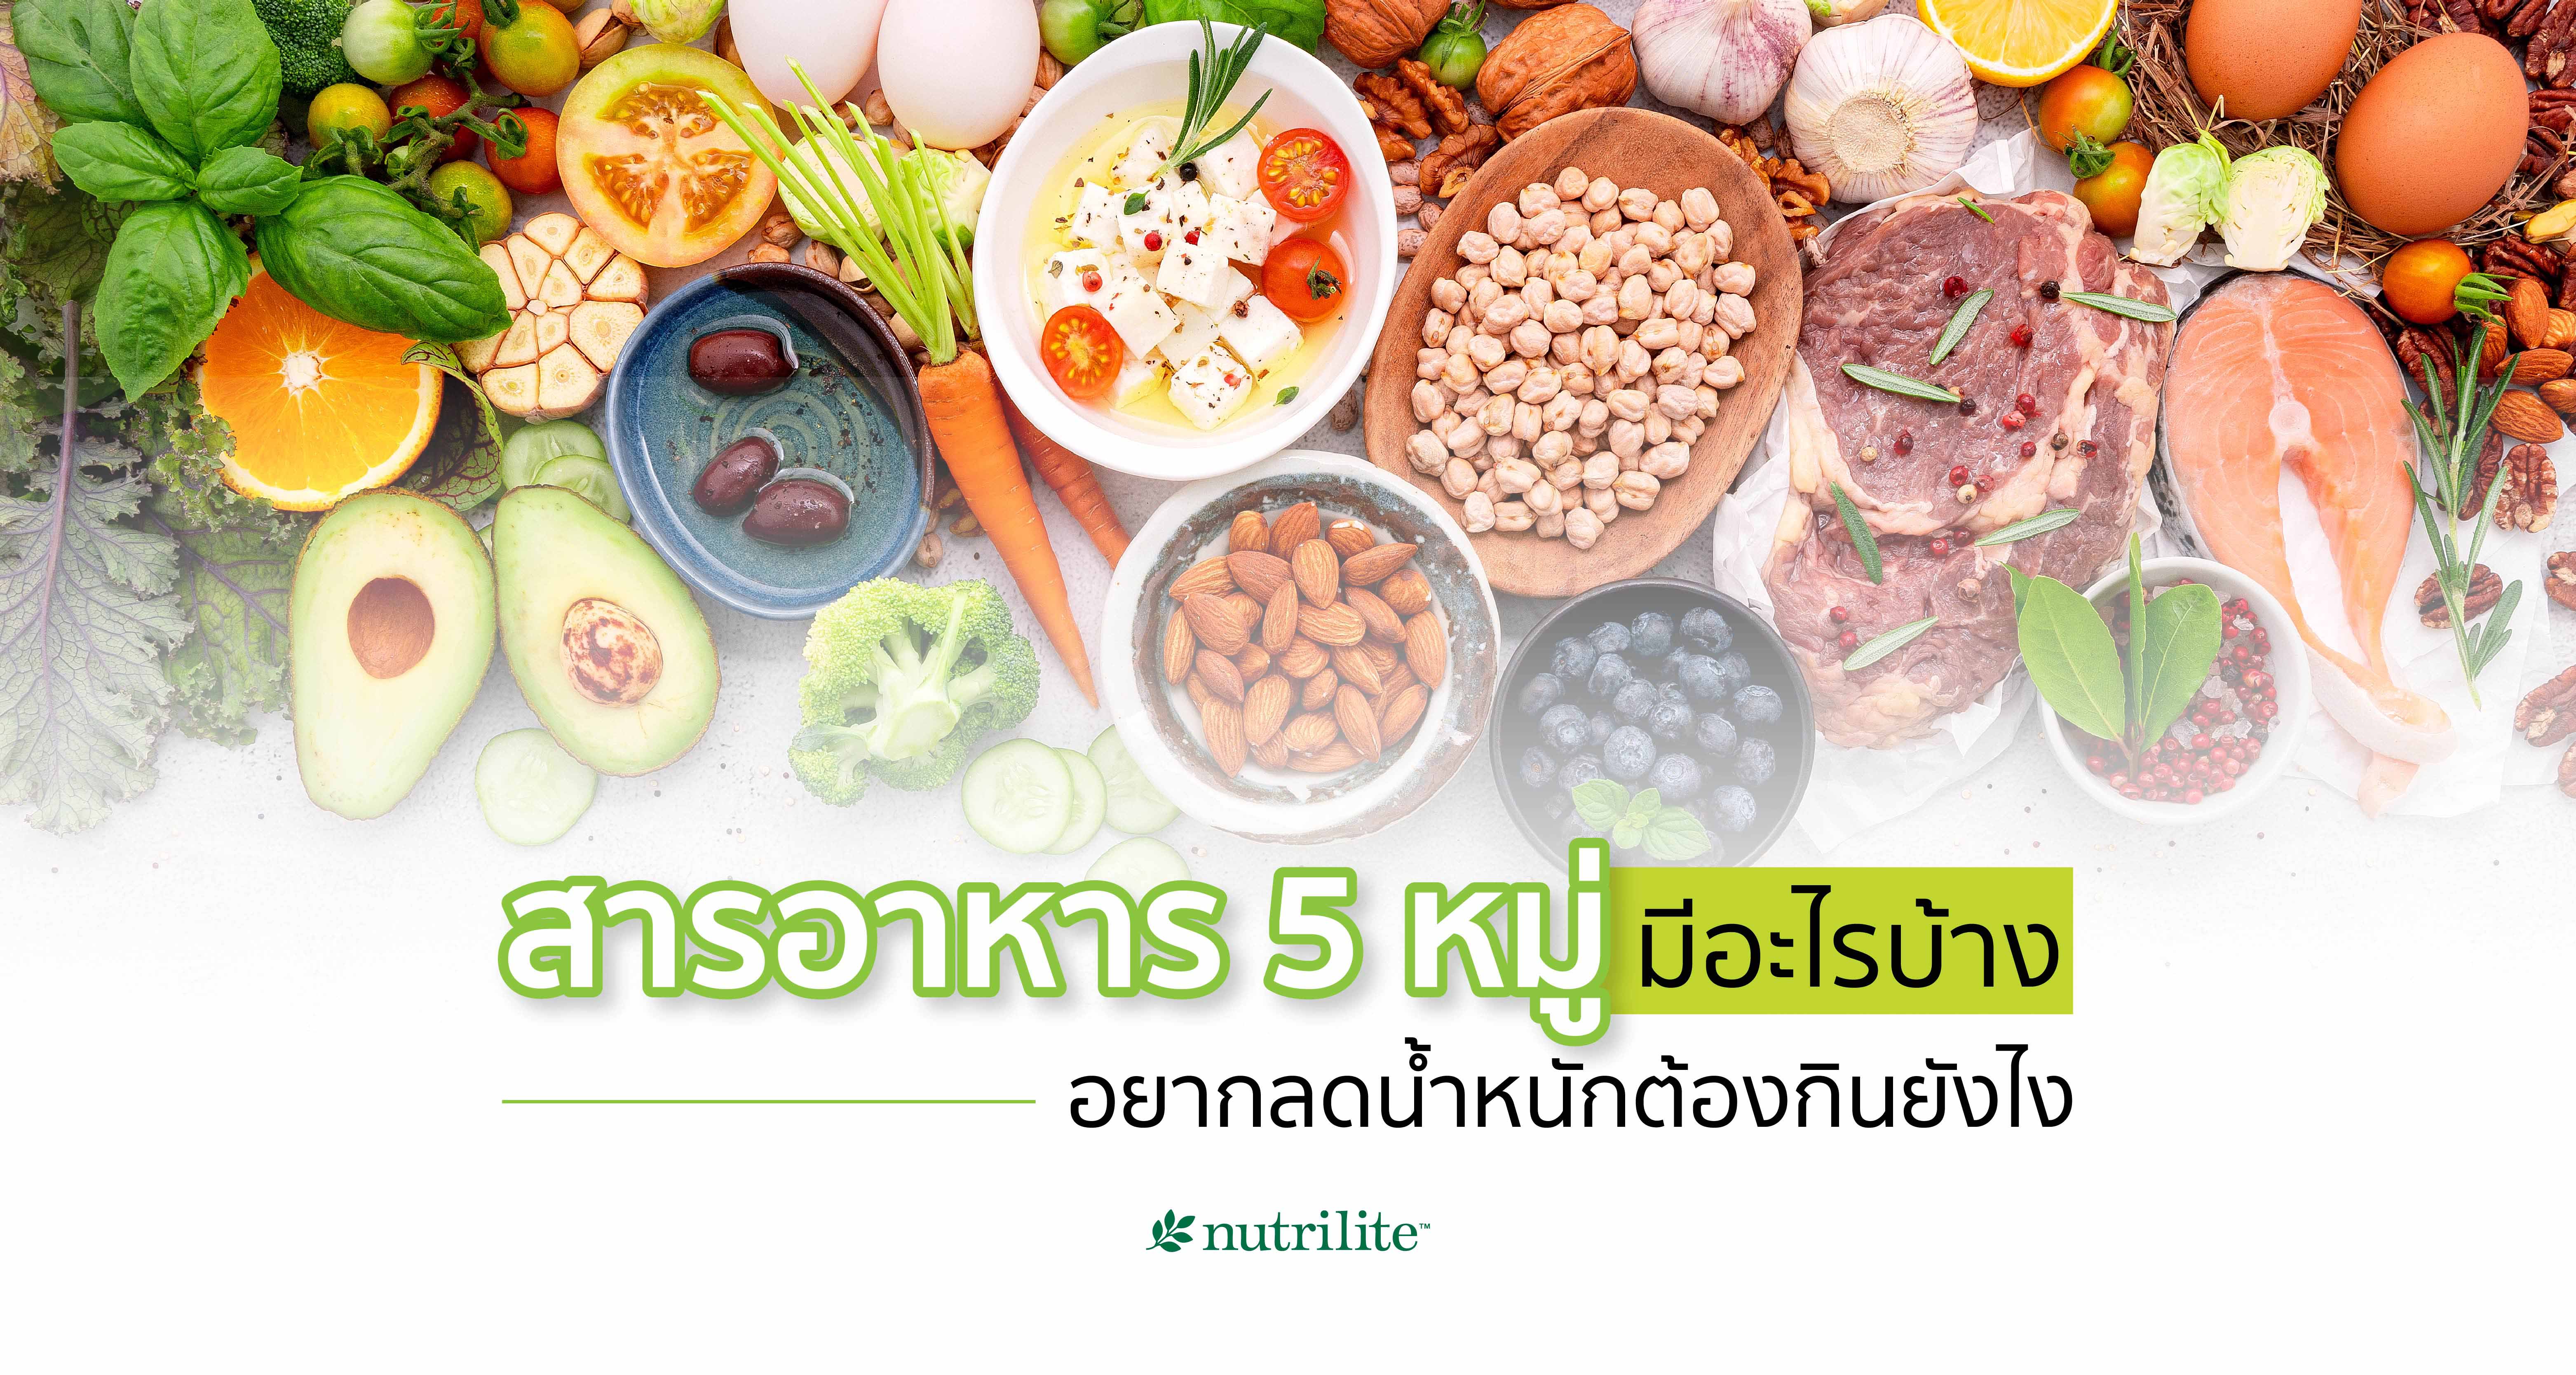 สารอาหาร 5 หมู่มีอะไรบ้าง อยากลดน้ำหนักต้องกินยังไง | Nutrilite™ Thailand